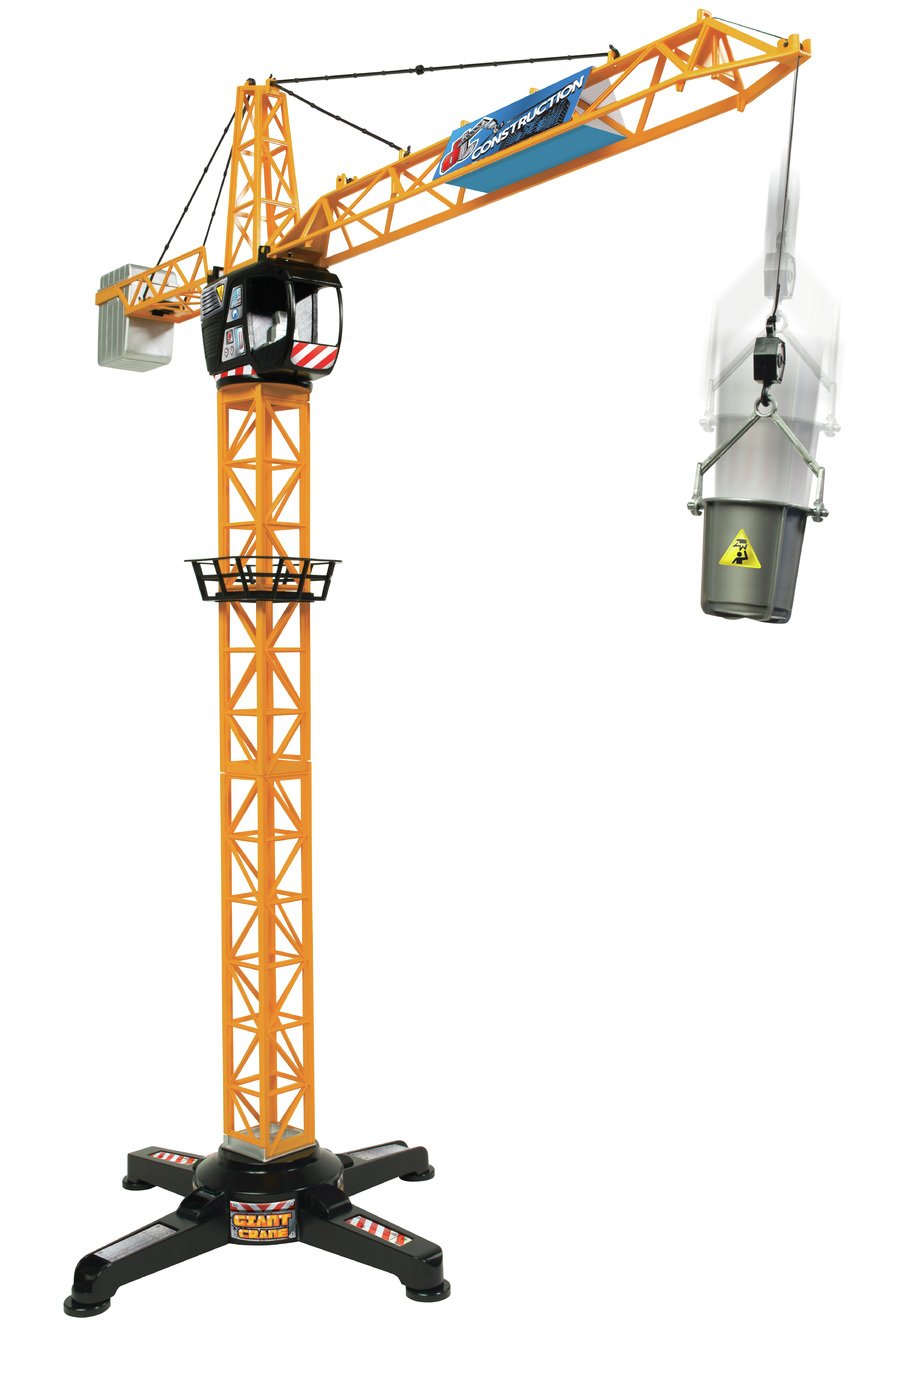 a toy crane